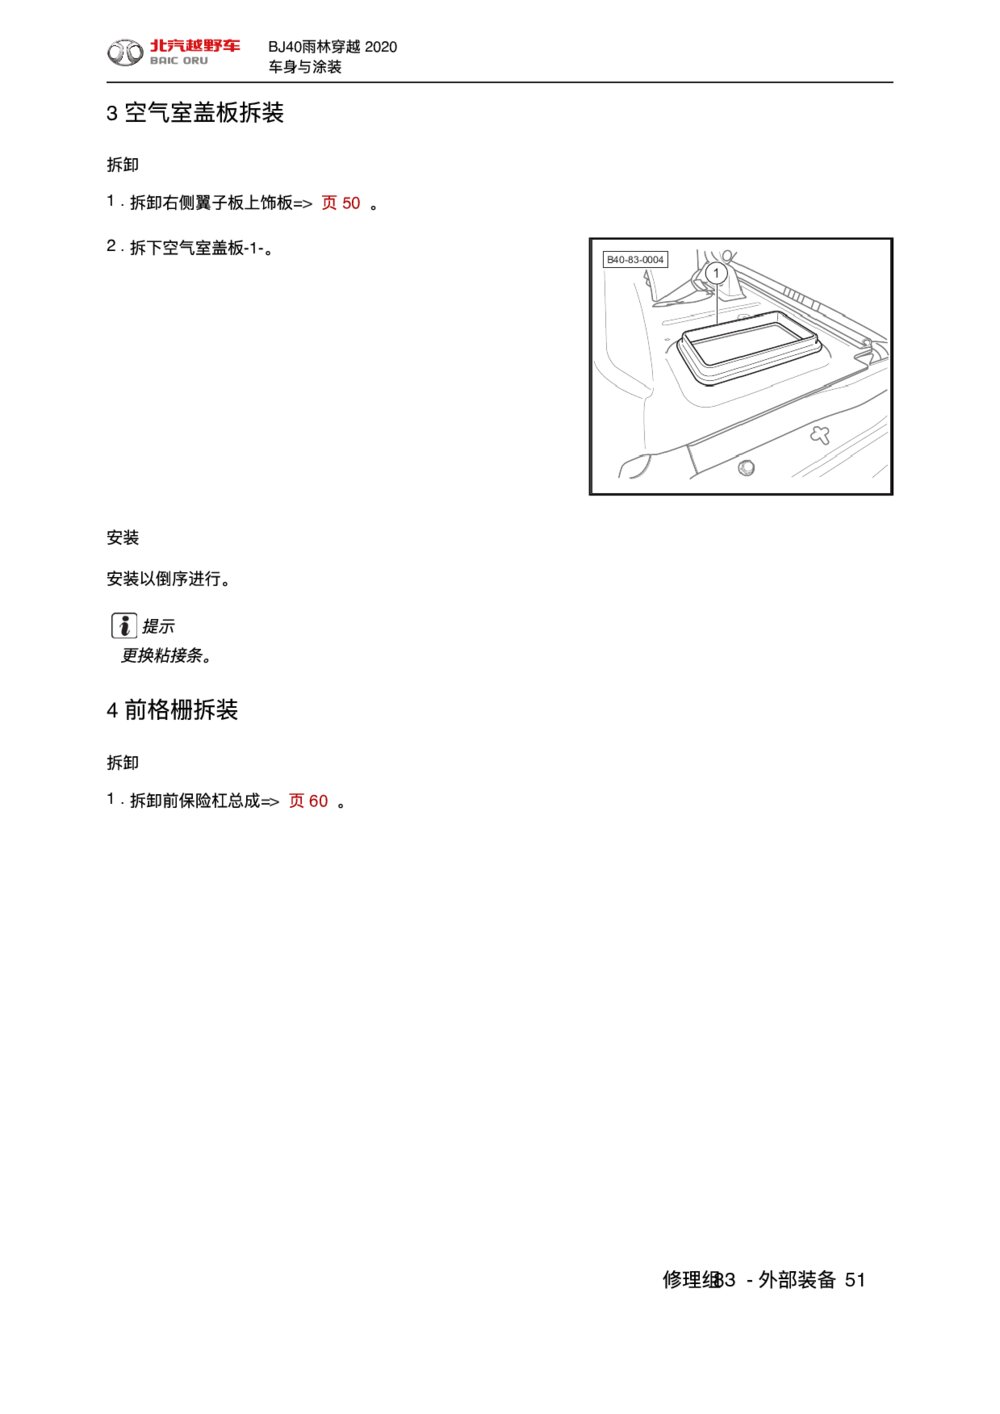 2020款北京BJ40空气室盖板拆装维修手册1